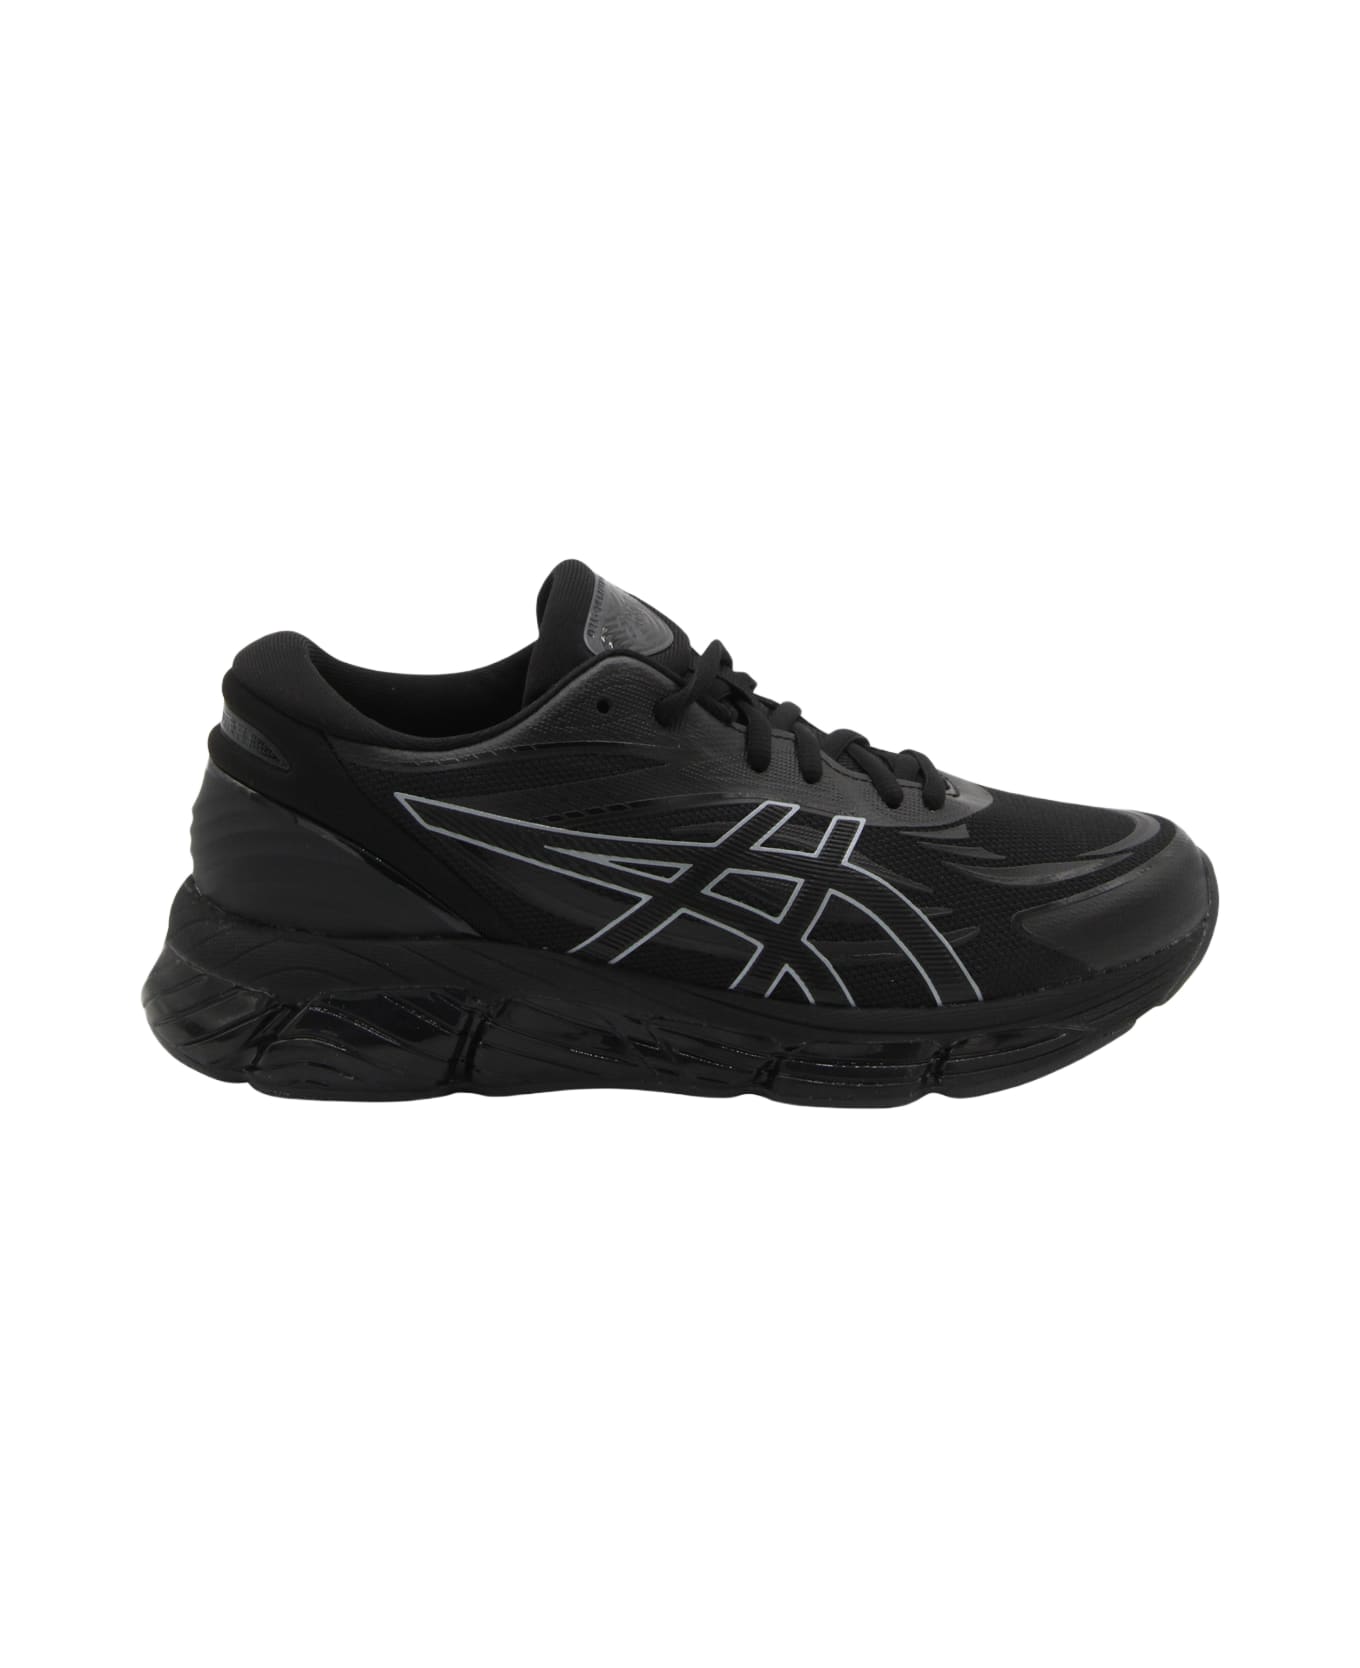 Asics Black Gel Quantun 360 Sneakers - Black